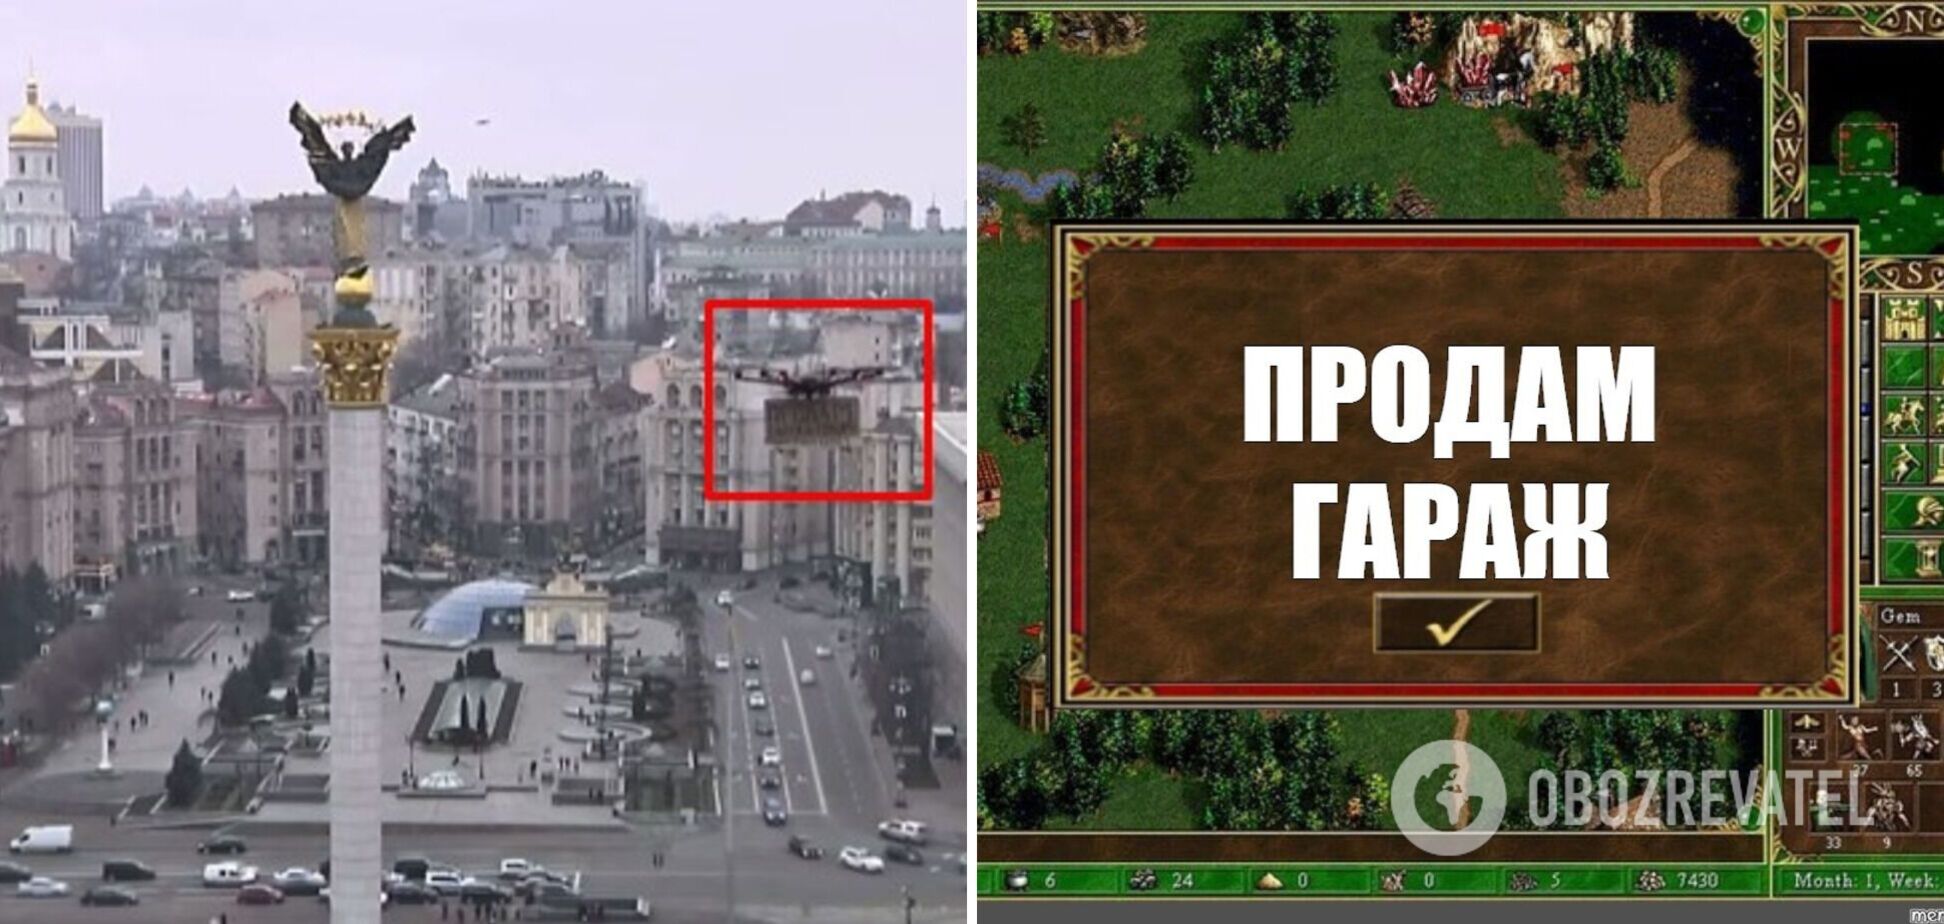 Украинцы показали свое 'объявление' с телефоном посольства РФ в трансляции Reuters